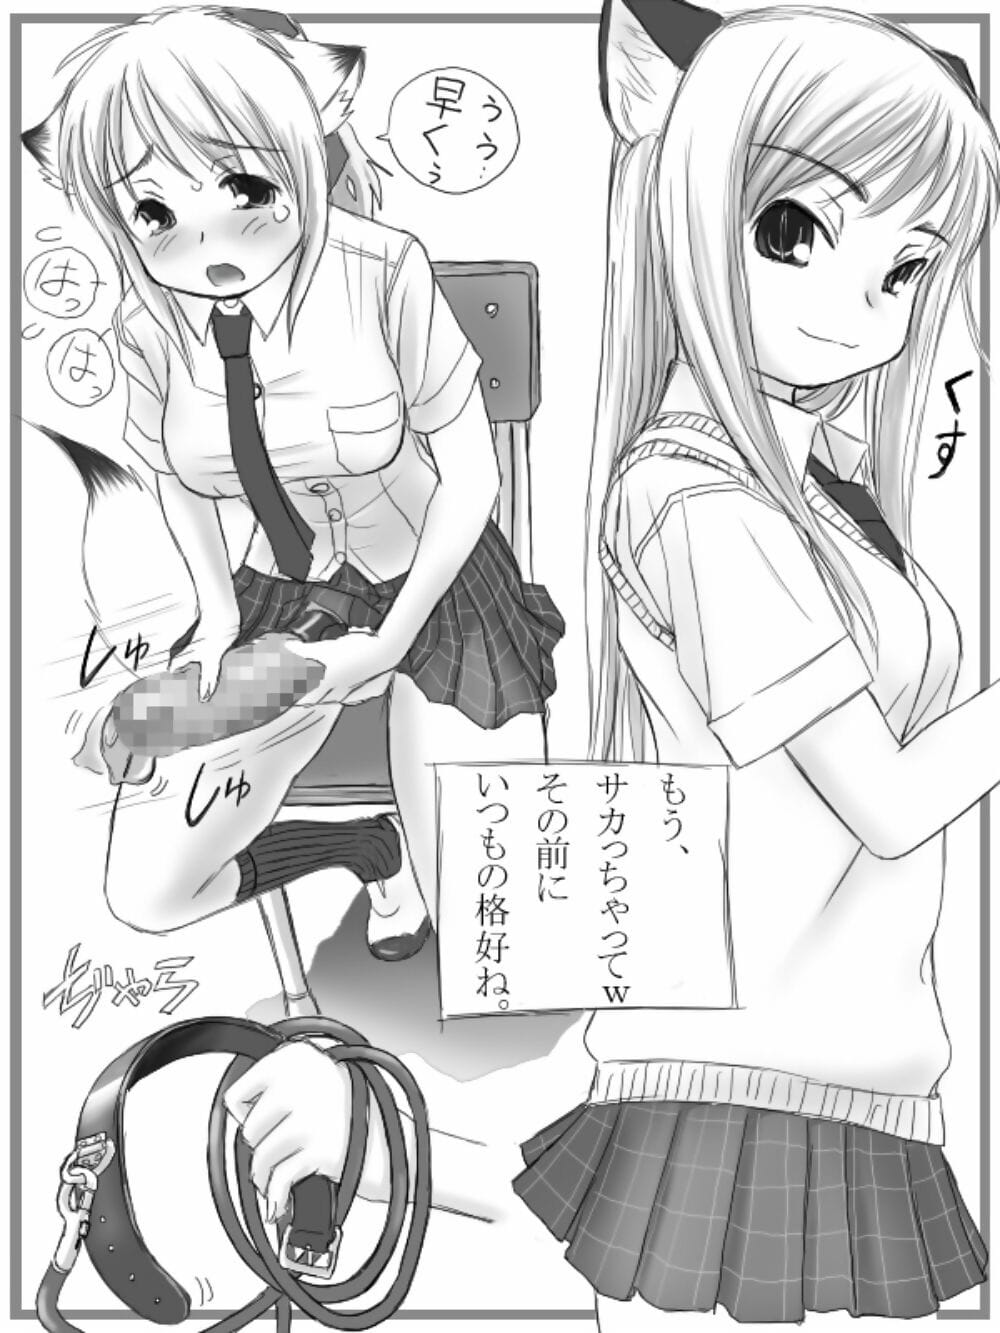 무이 garou 무이 Futanari 산 림 shuu + omake Manga 디지털 부품 5